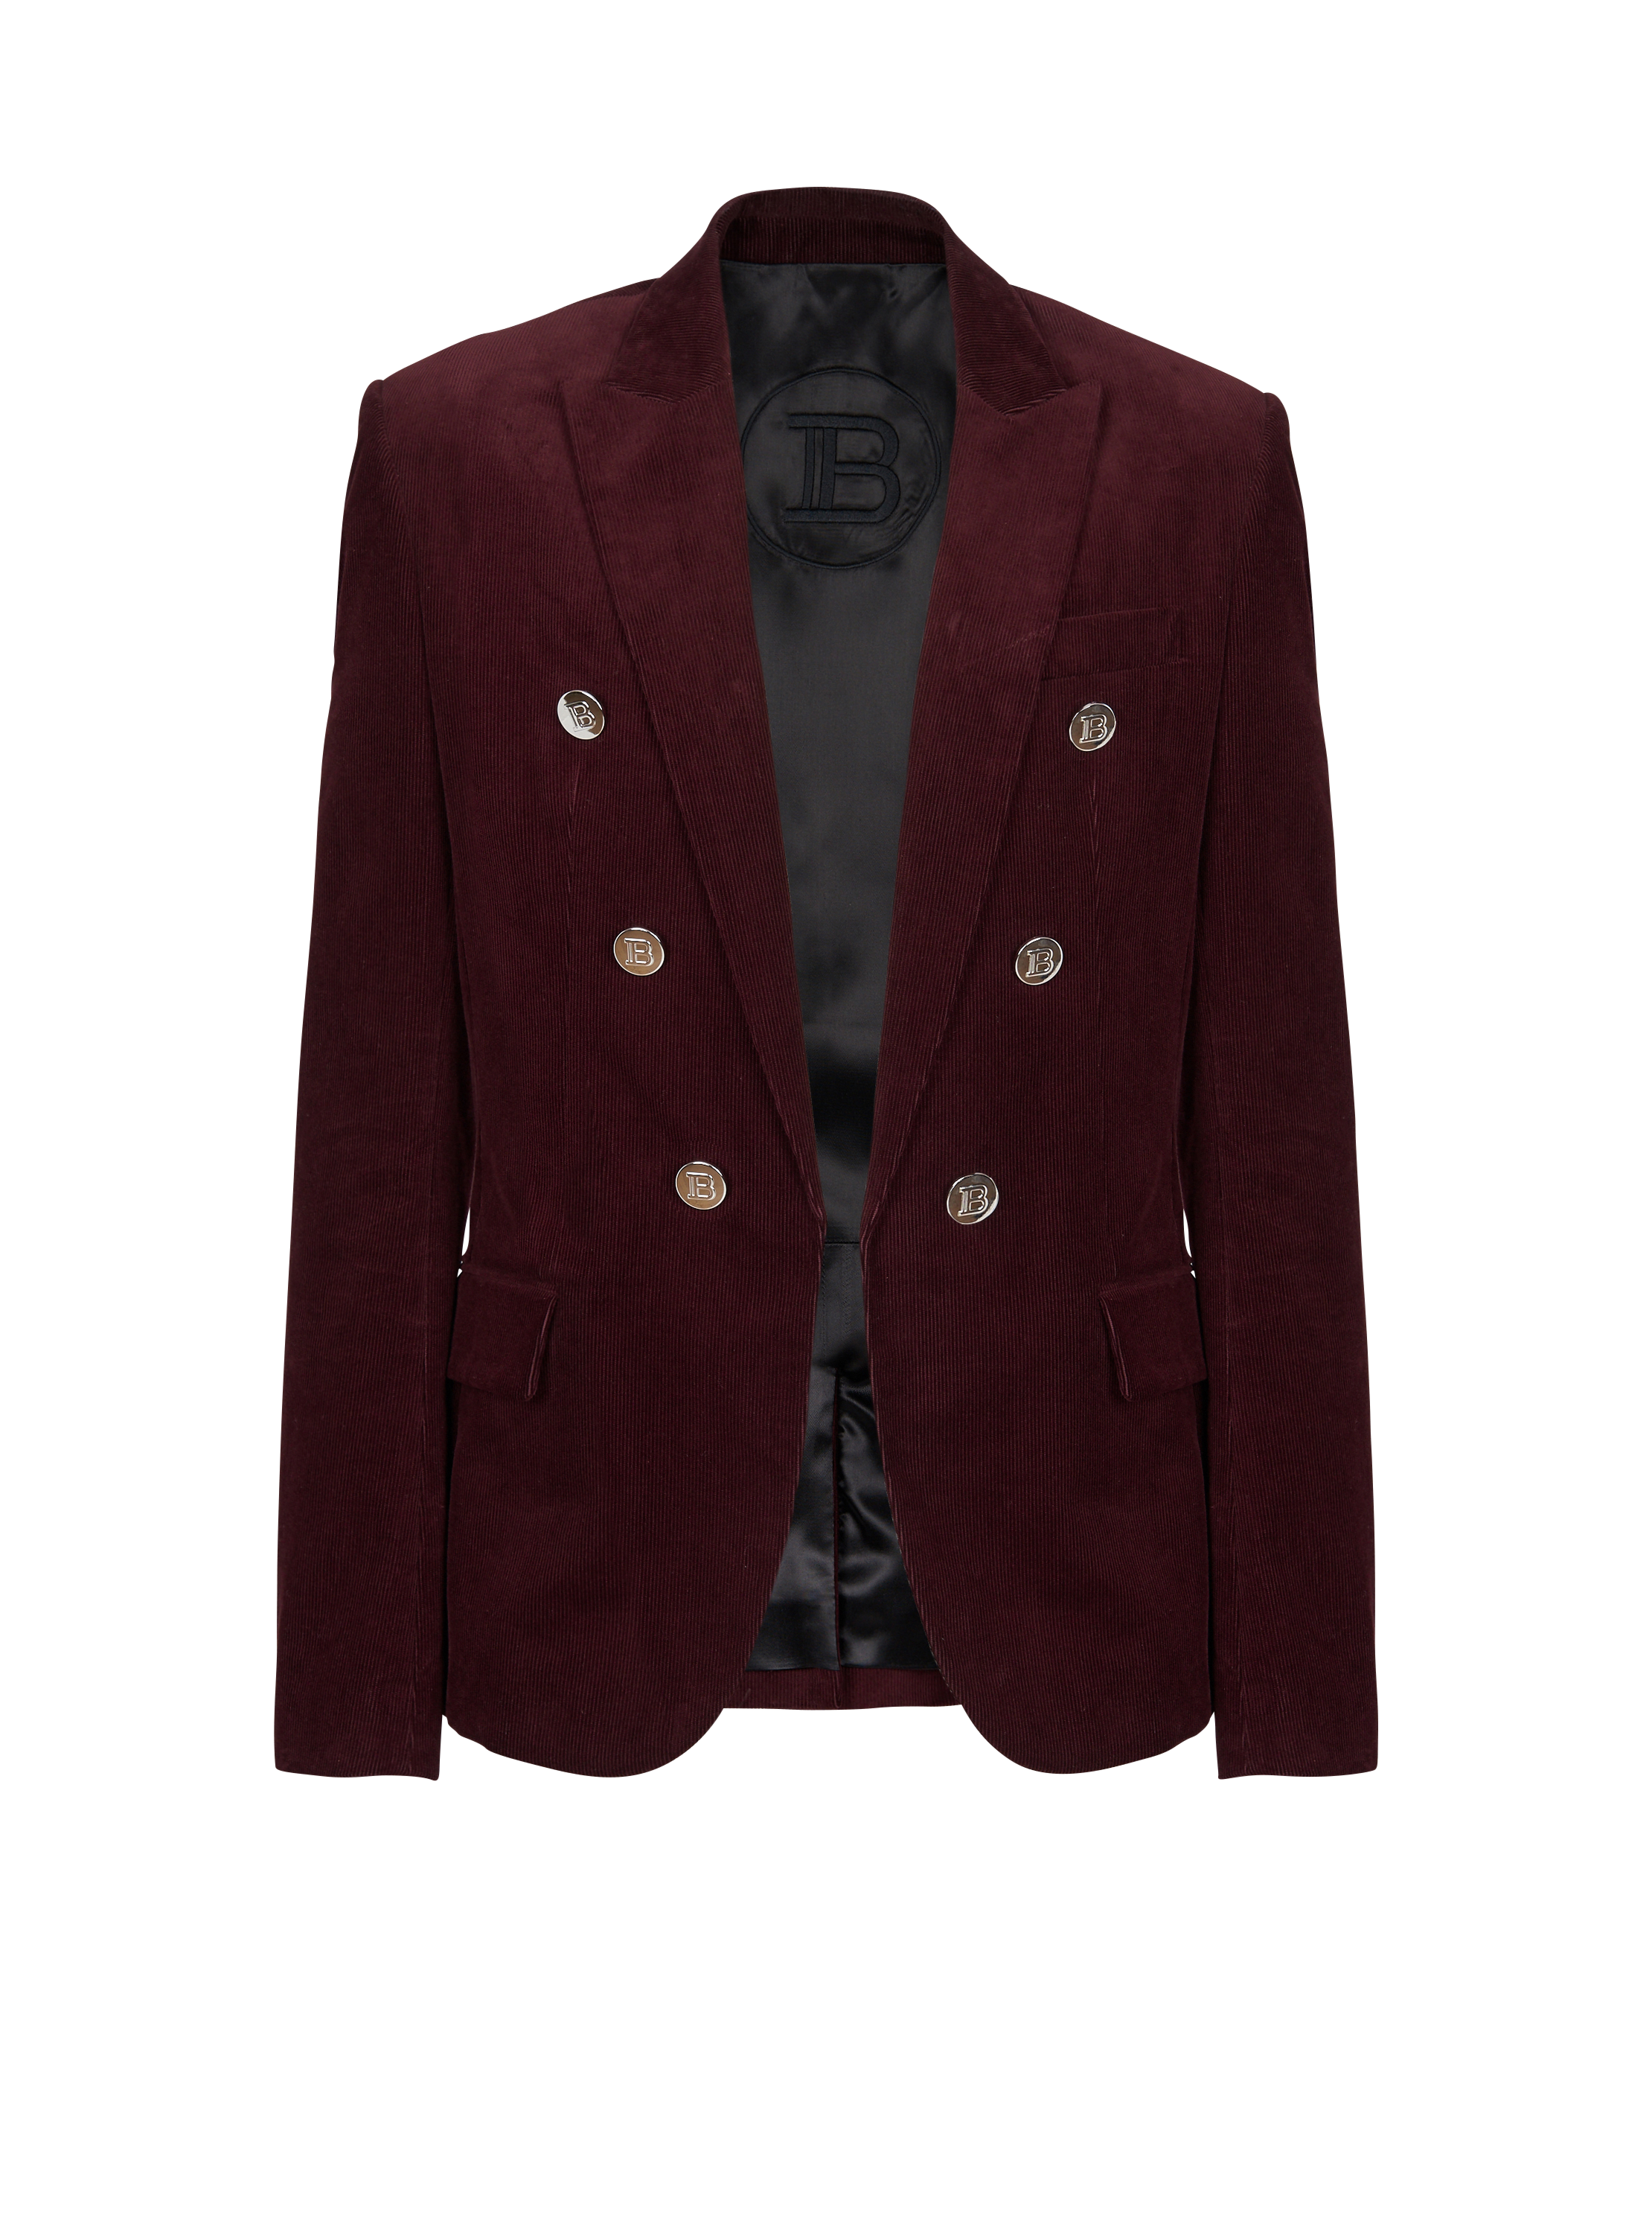 6-button velvet jacket, red, hi-res